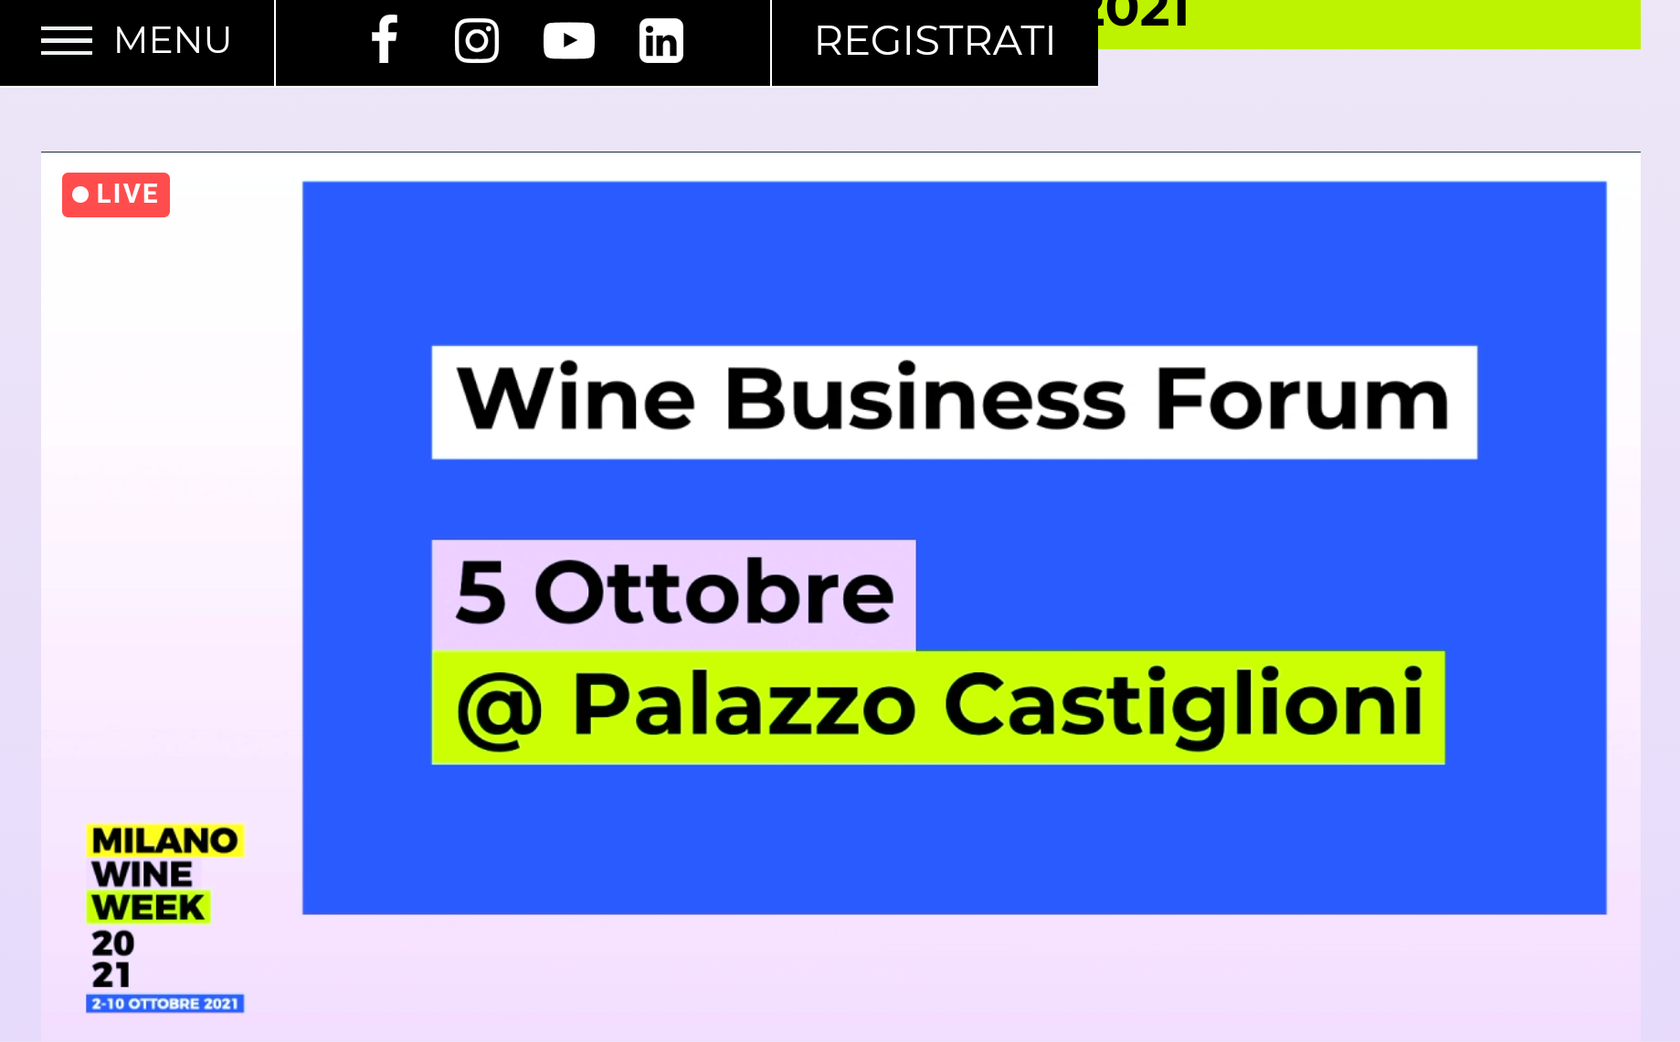 Wine Business Forum MWW 2021